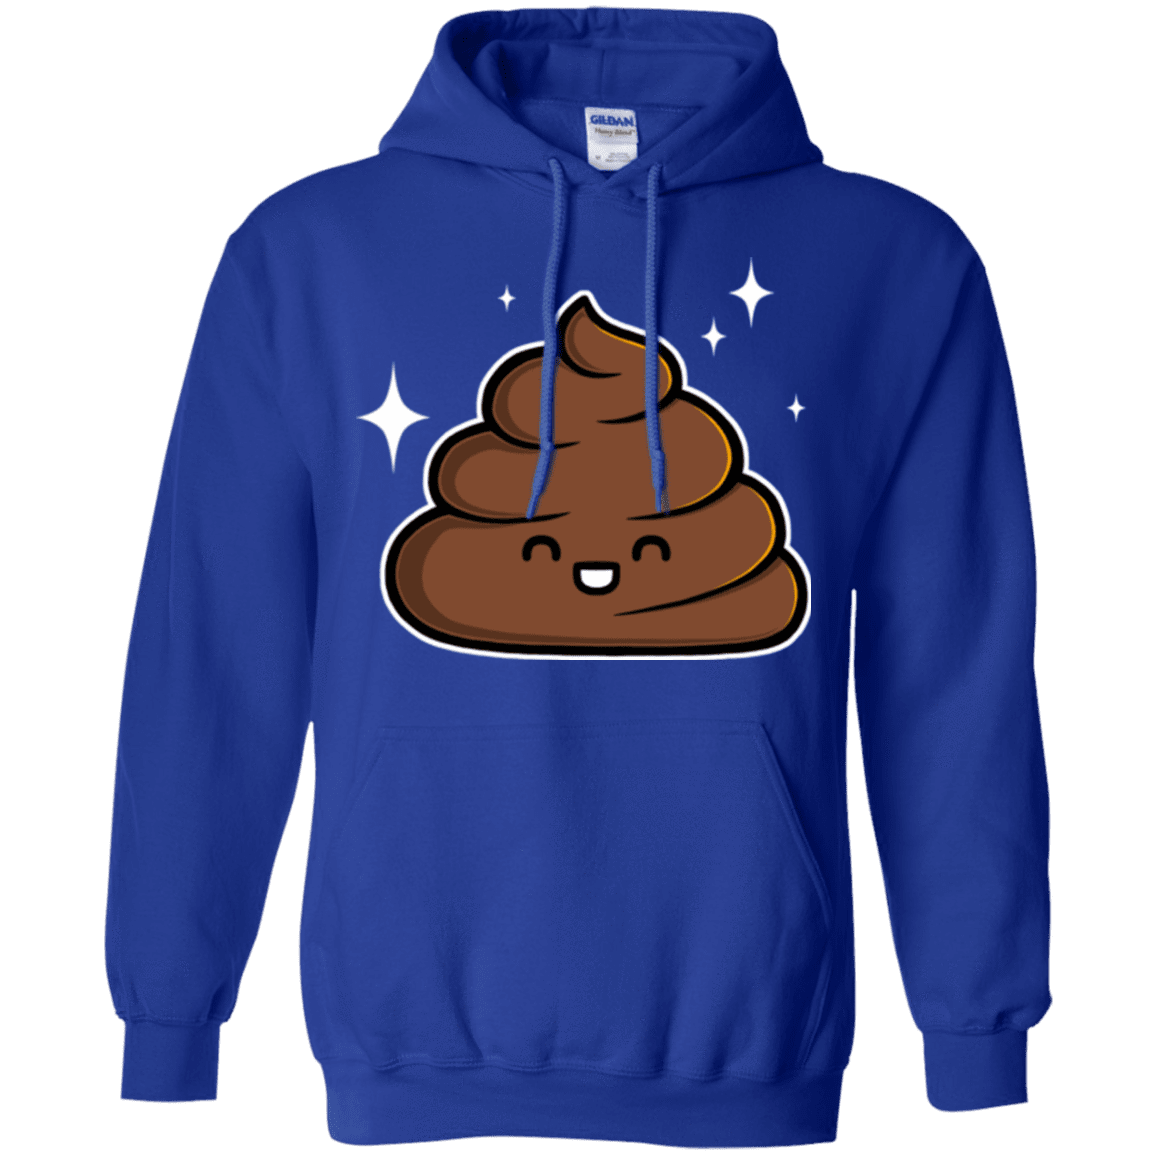 Sweatshirts Royal / Small Cutie Poop Pullover Hoodie